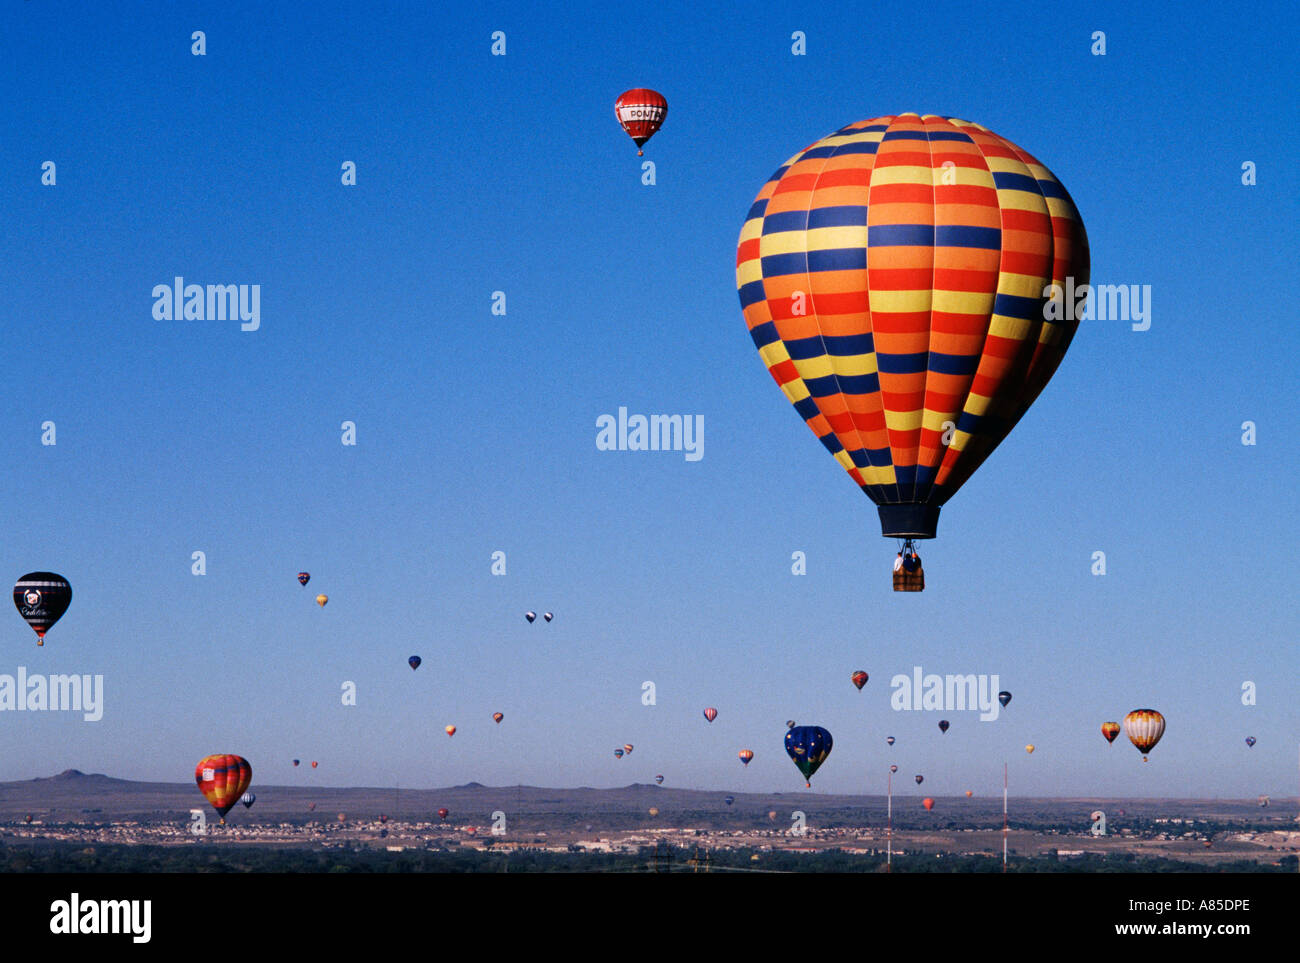 NM Albuquerque Balloon Fiesta Festival Hot air balloons rising in the morning sky Stock Photo